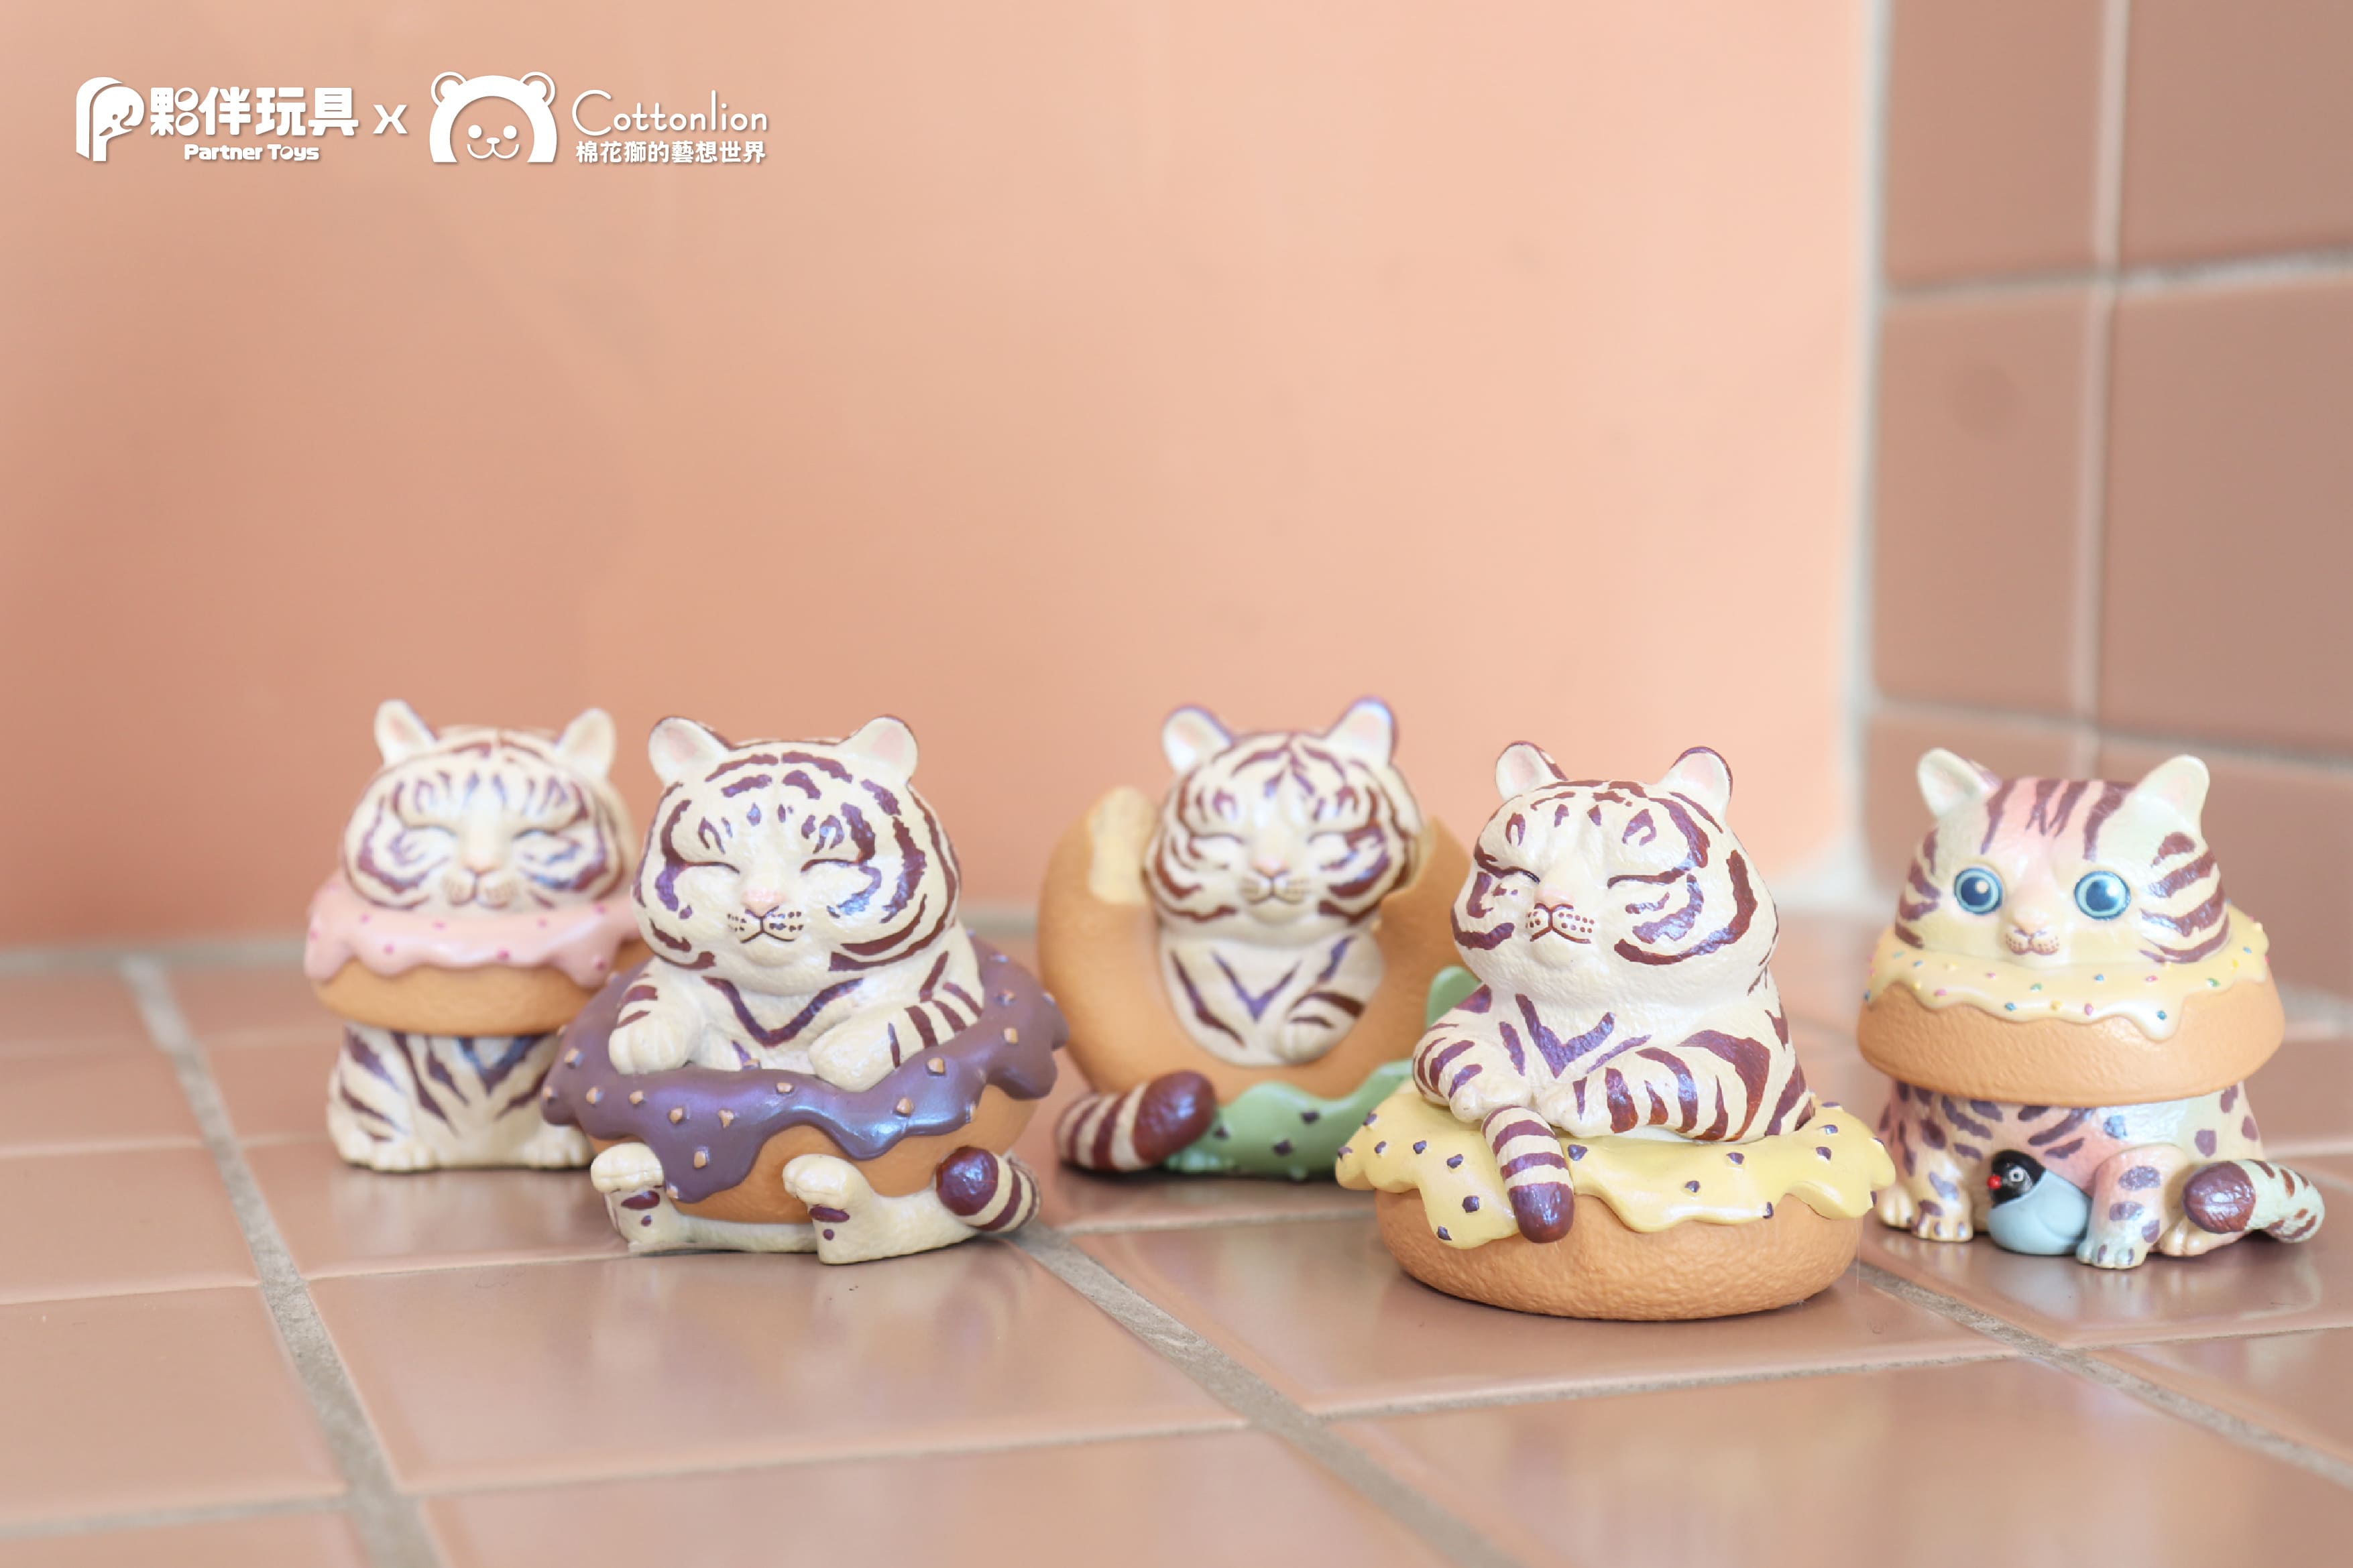 Icing Tiger Donuts Gacha Series